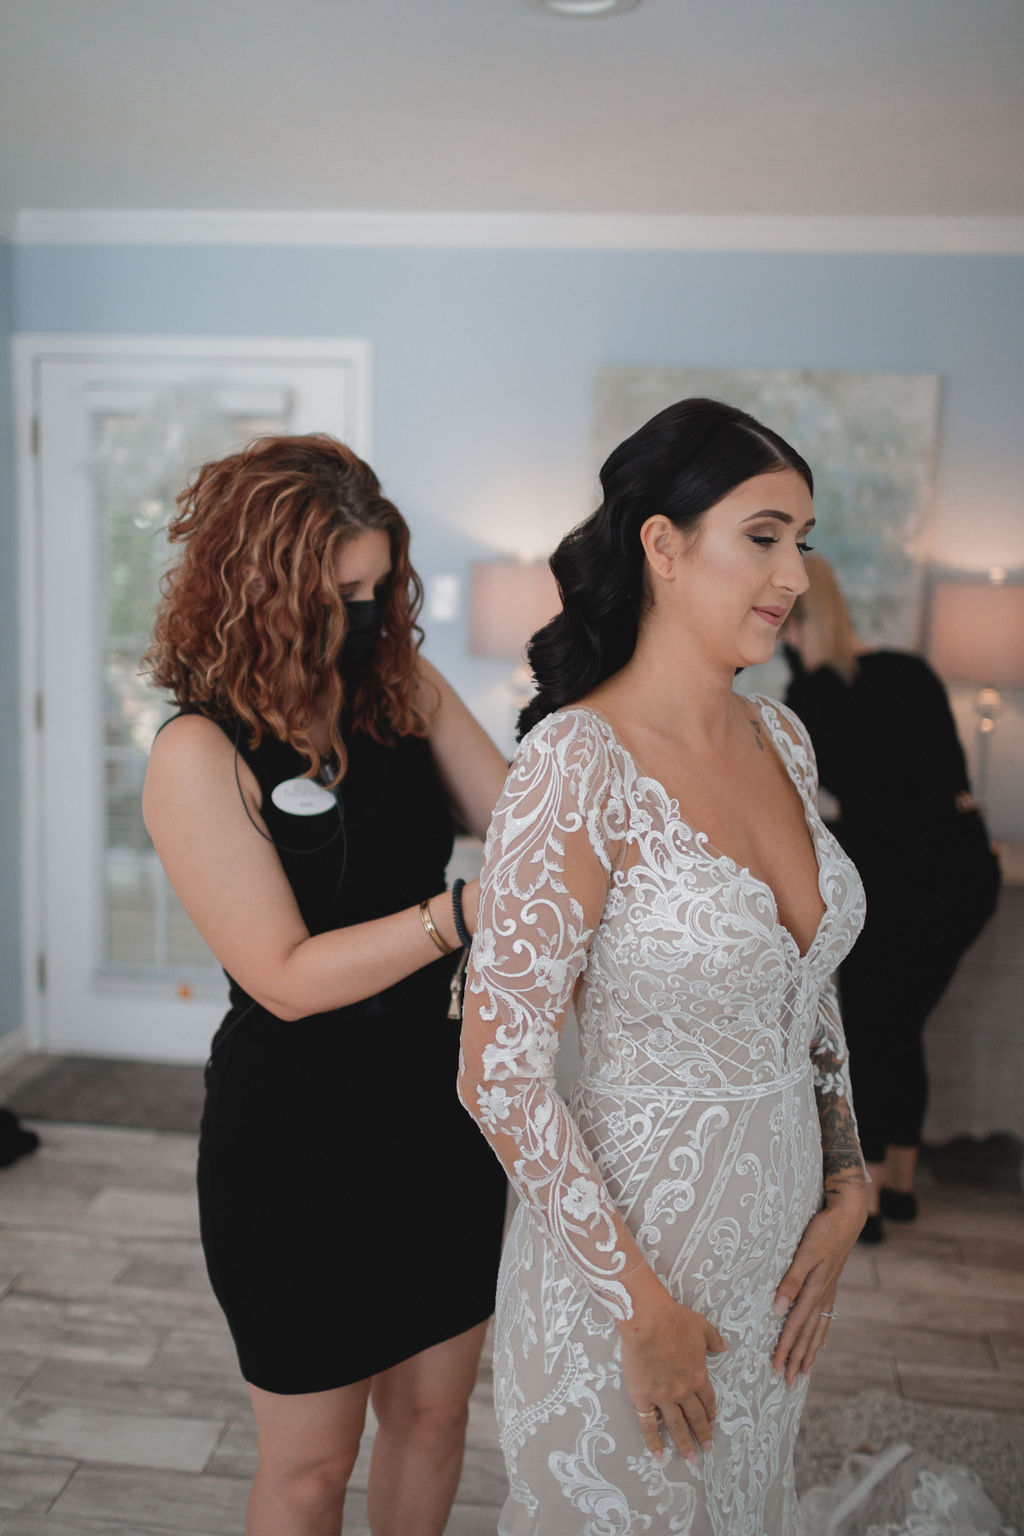 a wedding coordinator buttons a bride's dress
